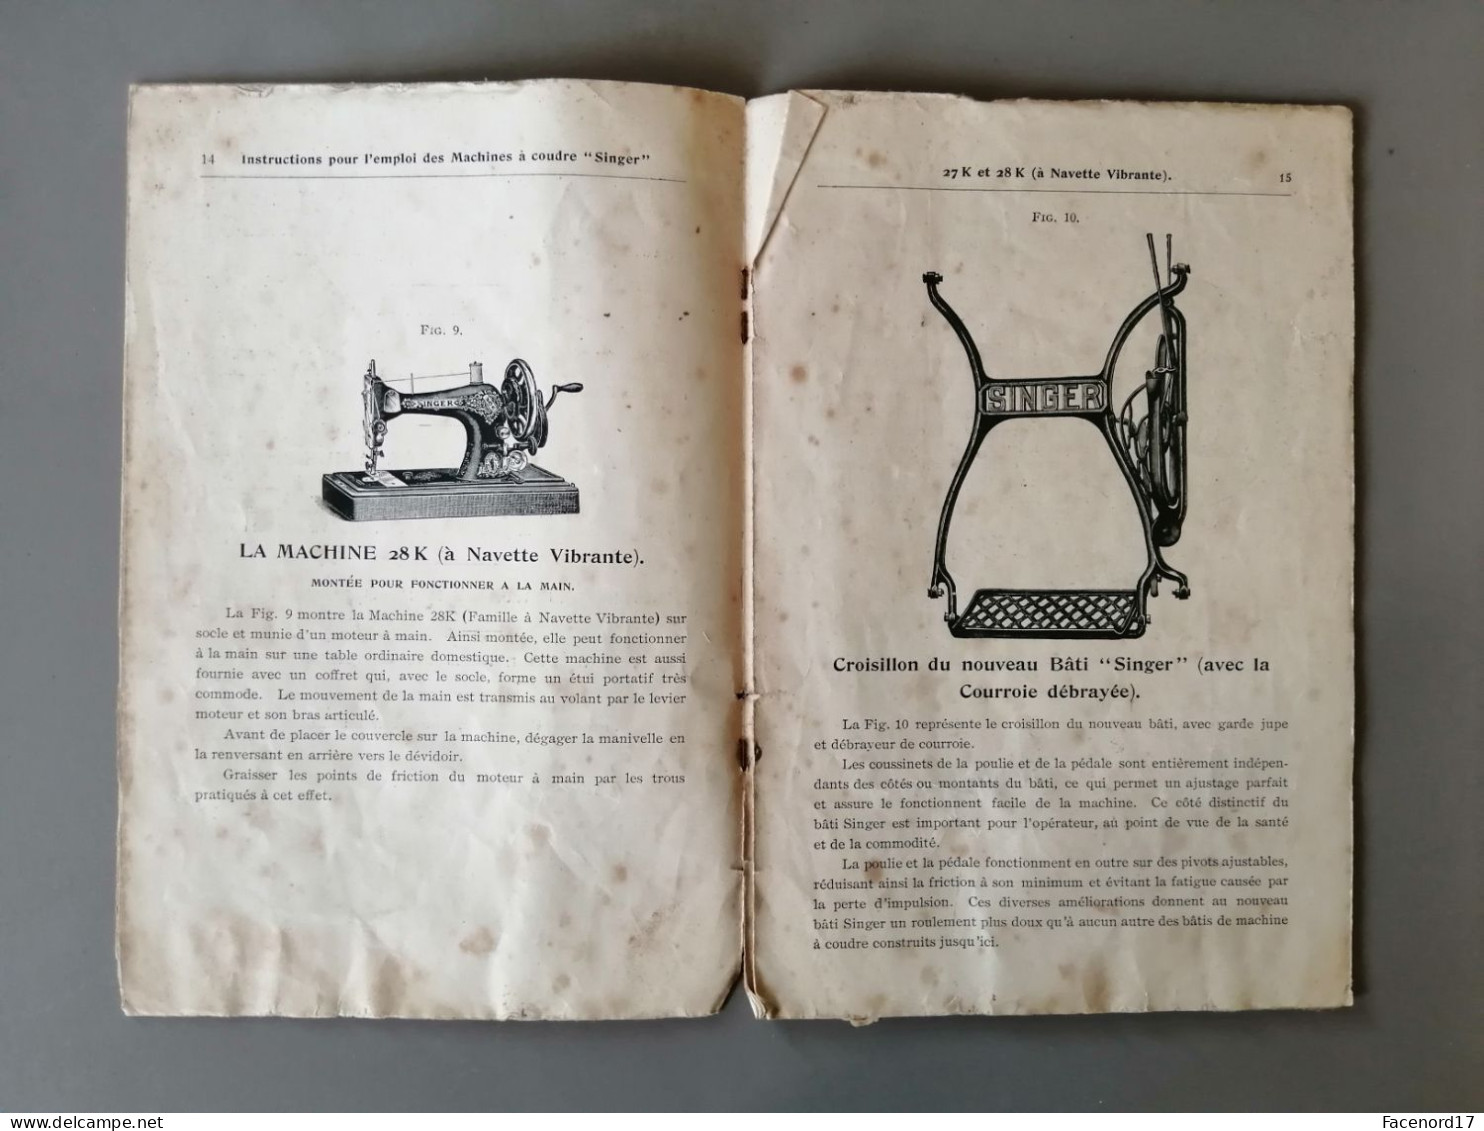 Instructions Pour L'emploi Des Machines à Coudre " Singer " 27K Et 28K à Navette Vibrante 1909 - Maschinen